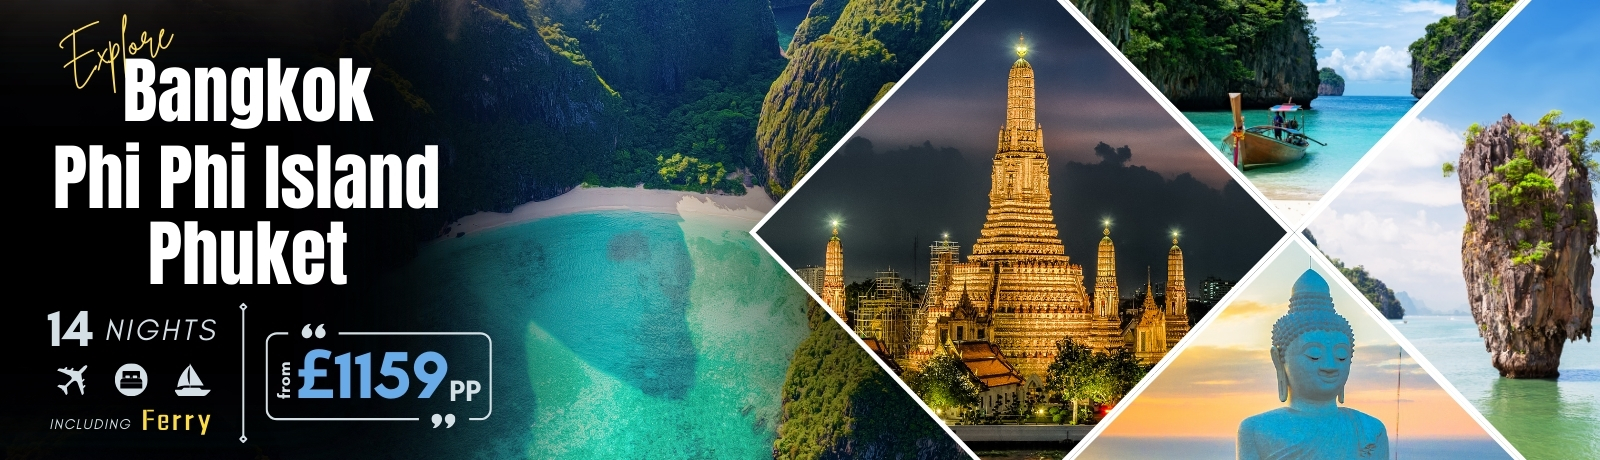 Affordable Bangkok & Phi Phi Island and Phuket